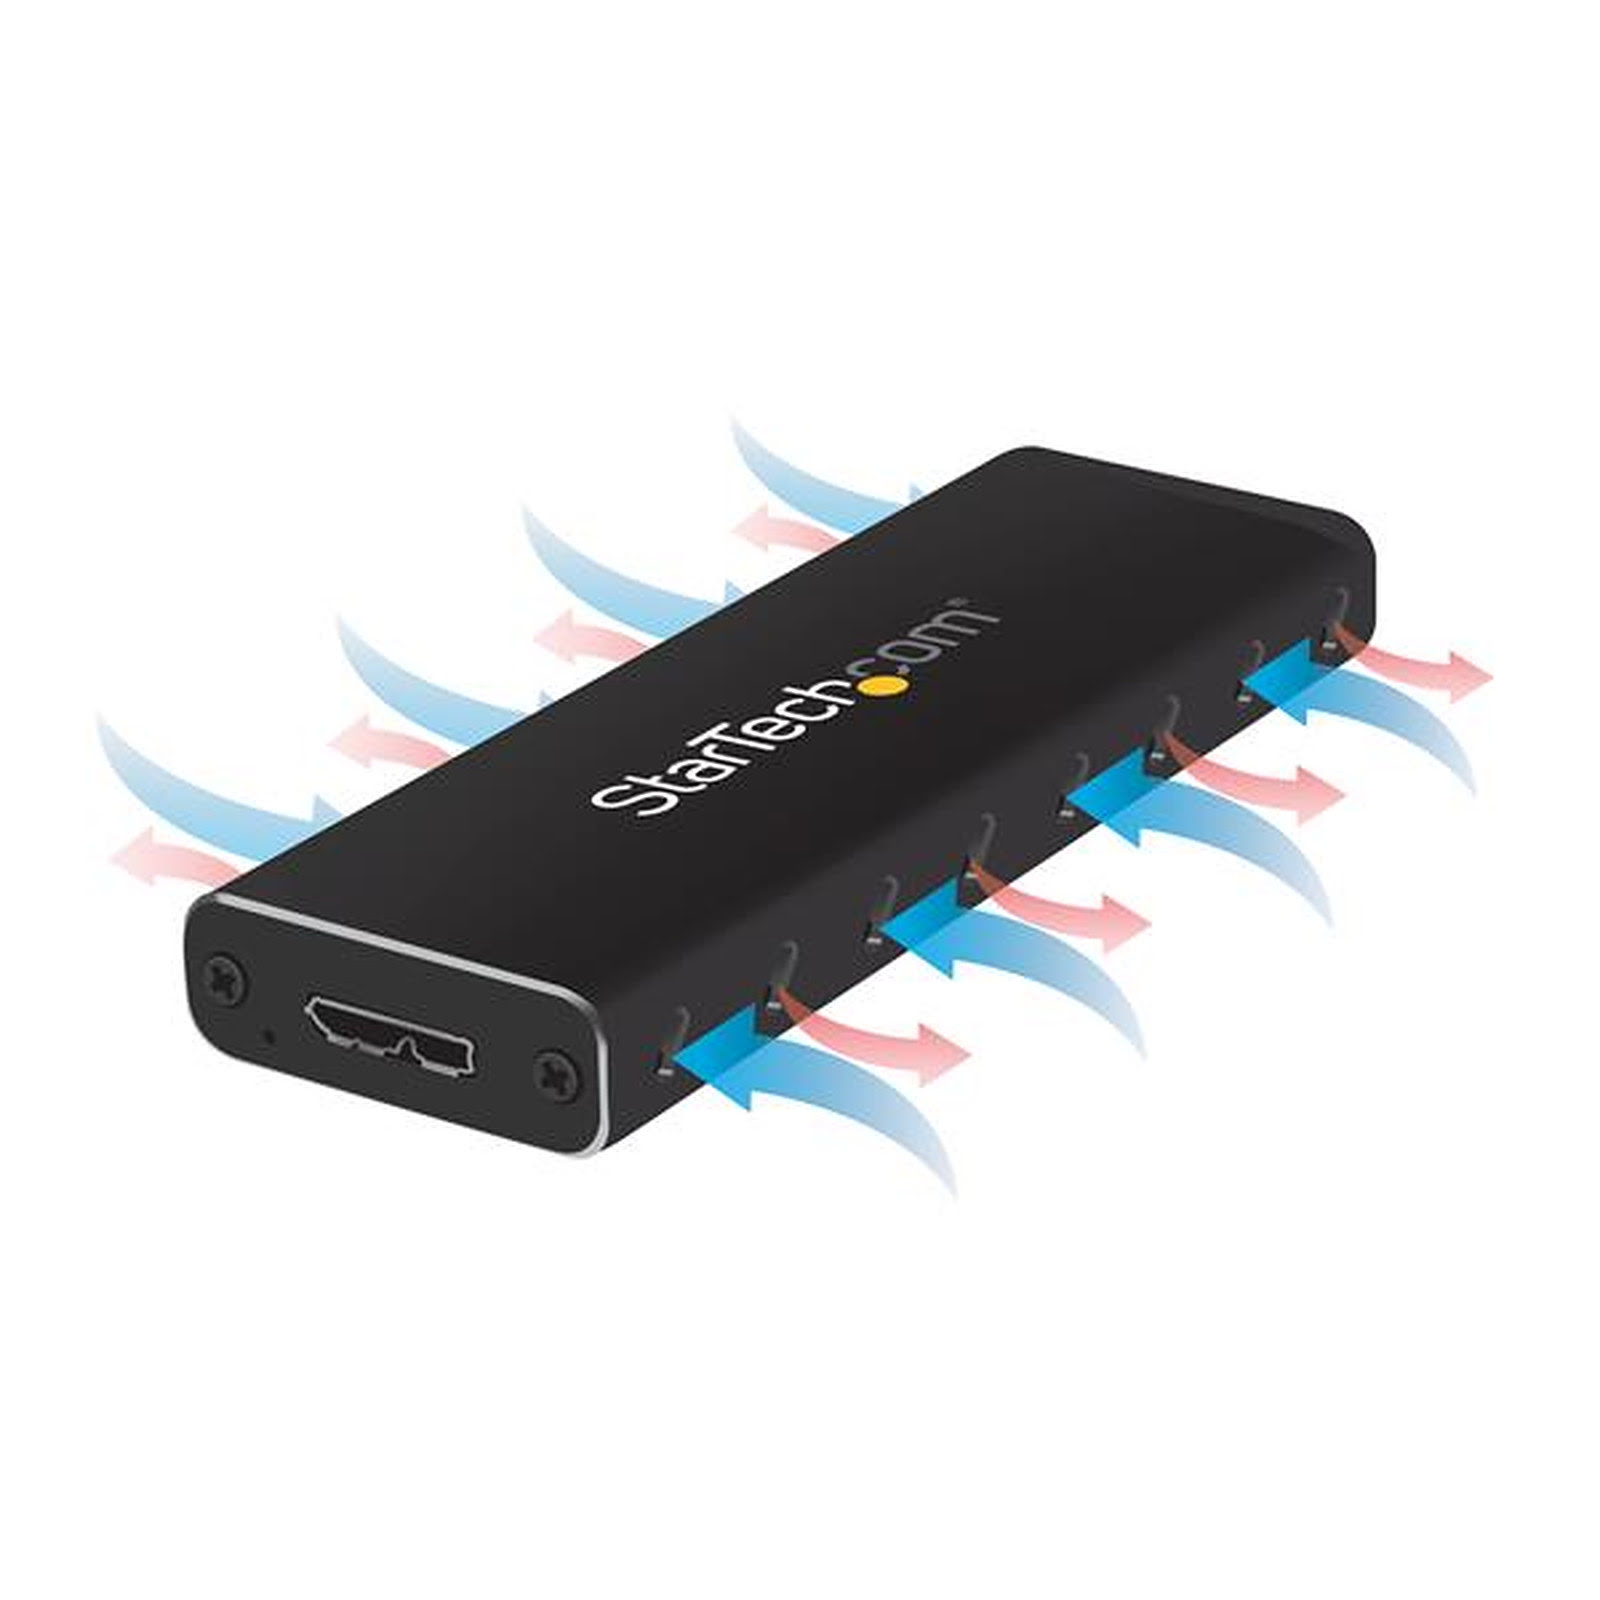 Boîtier CONNECTLAND 2,5 SATA USB 3.0 noir - Electro Dépôt